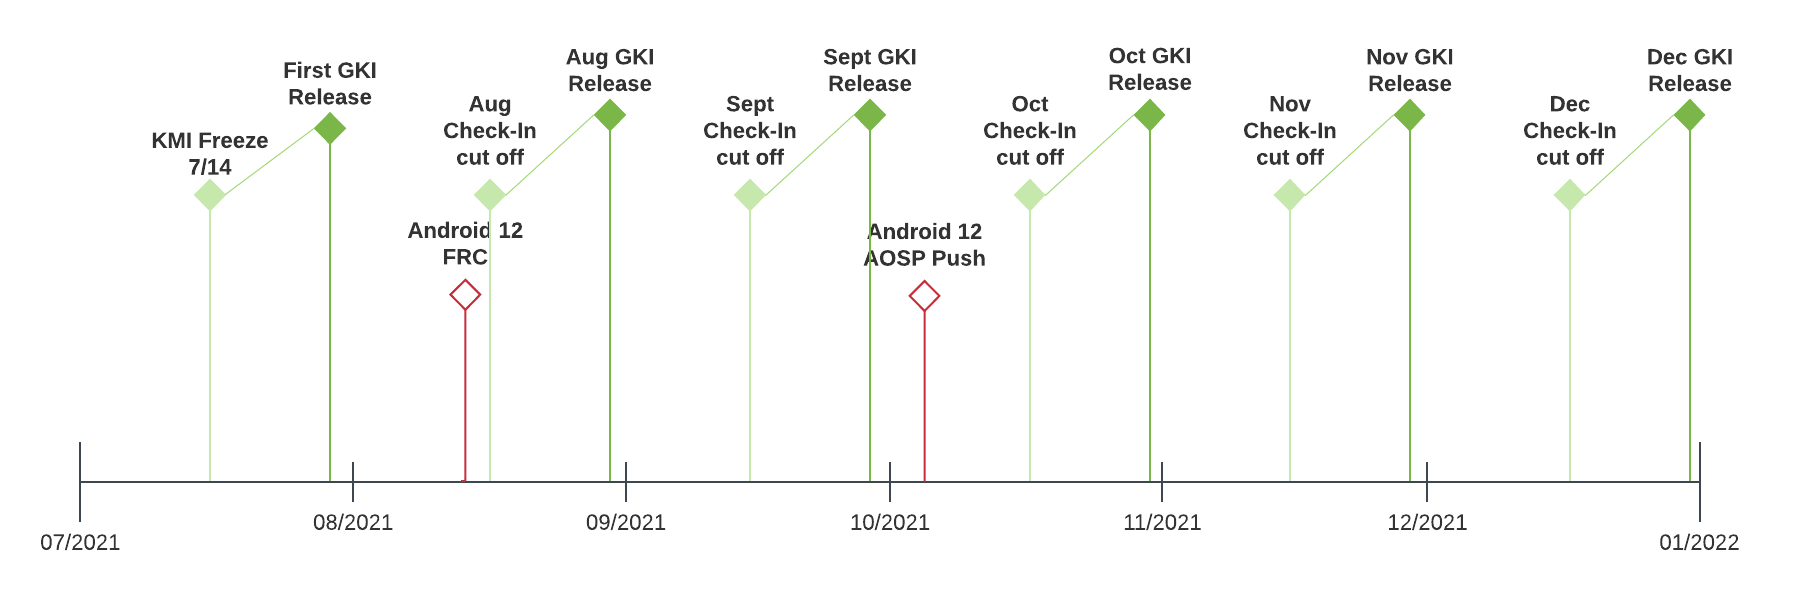 Cronograma de cadencia de lanzamiento de GKI